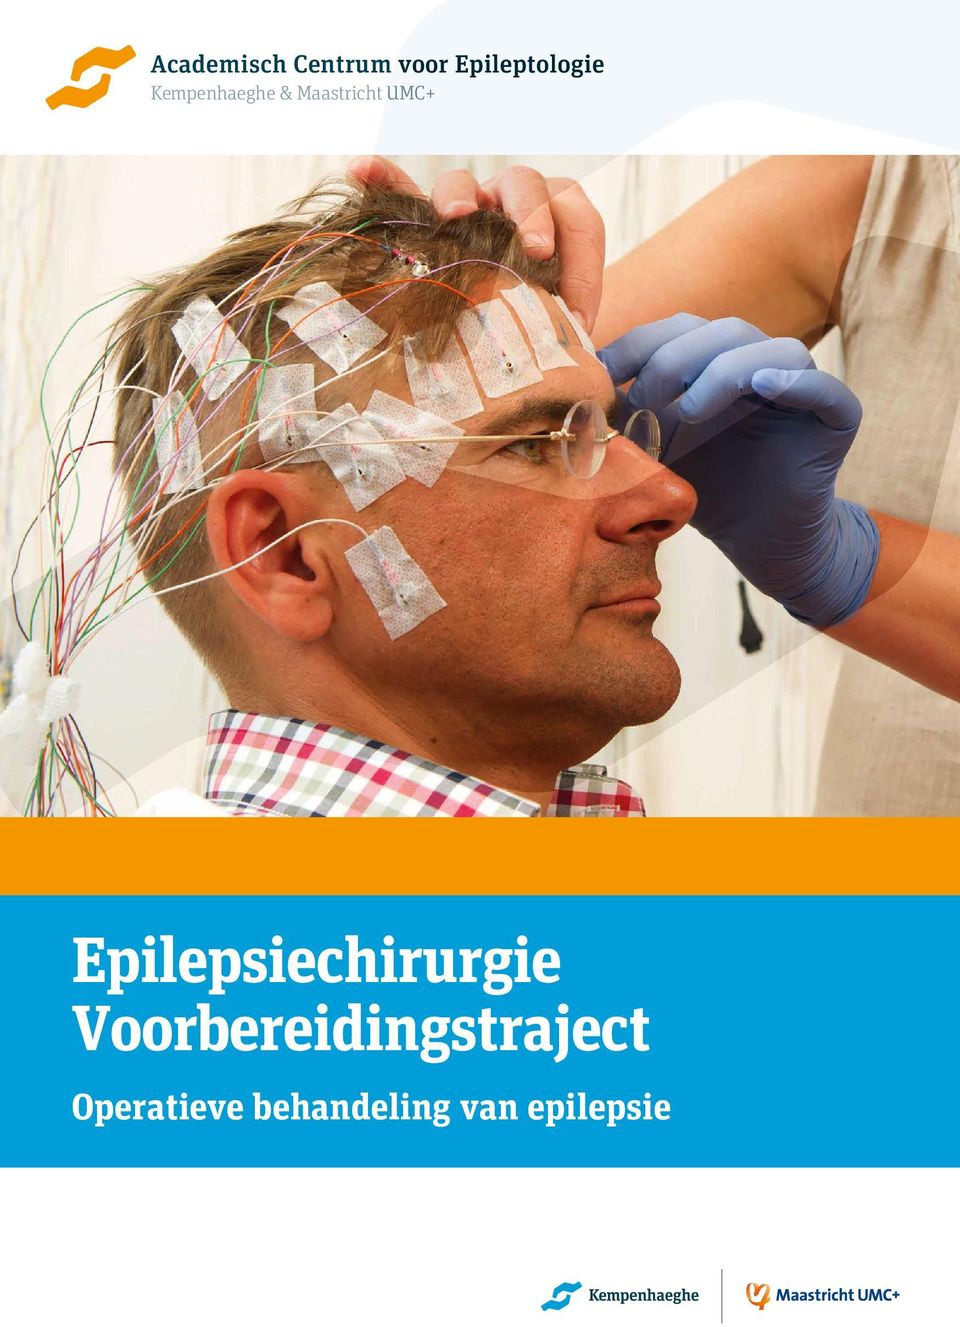 Maastricht UMC+ Epilepsiechirurgie